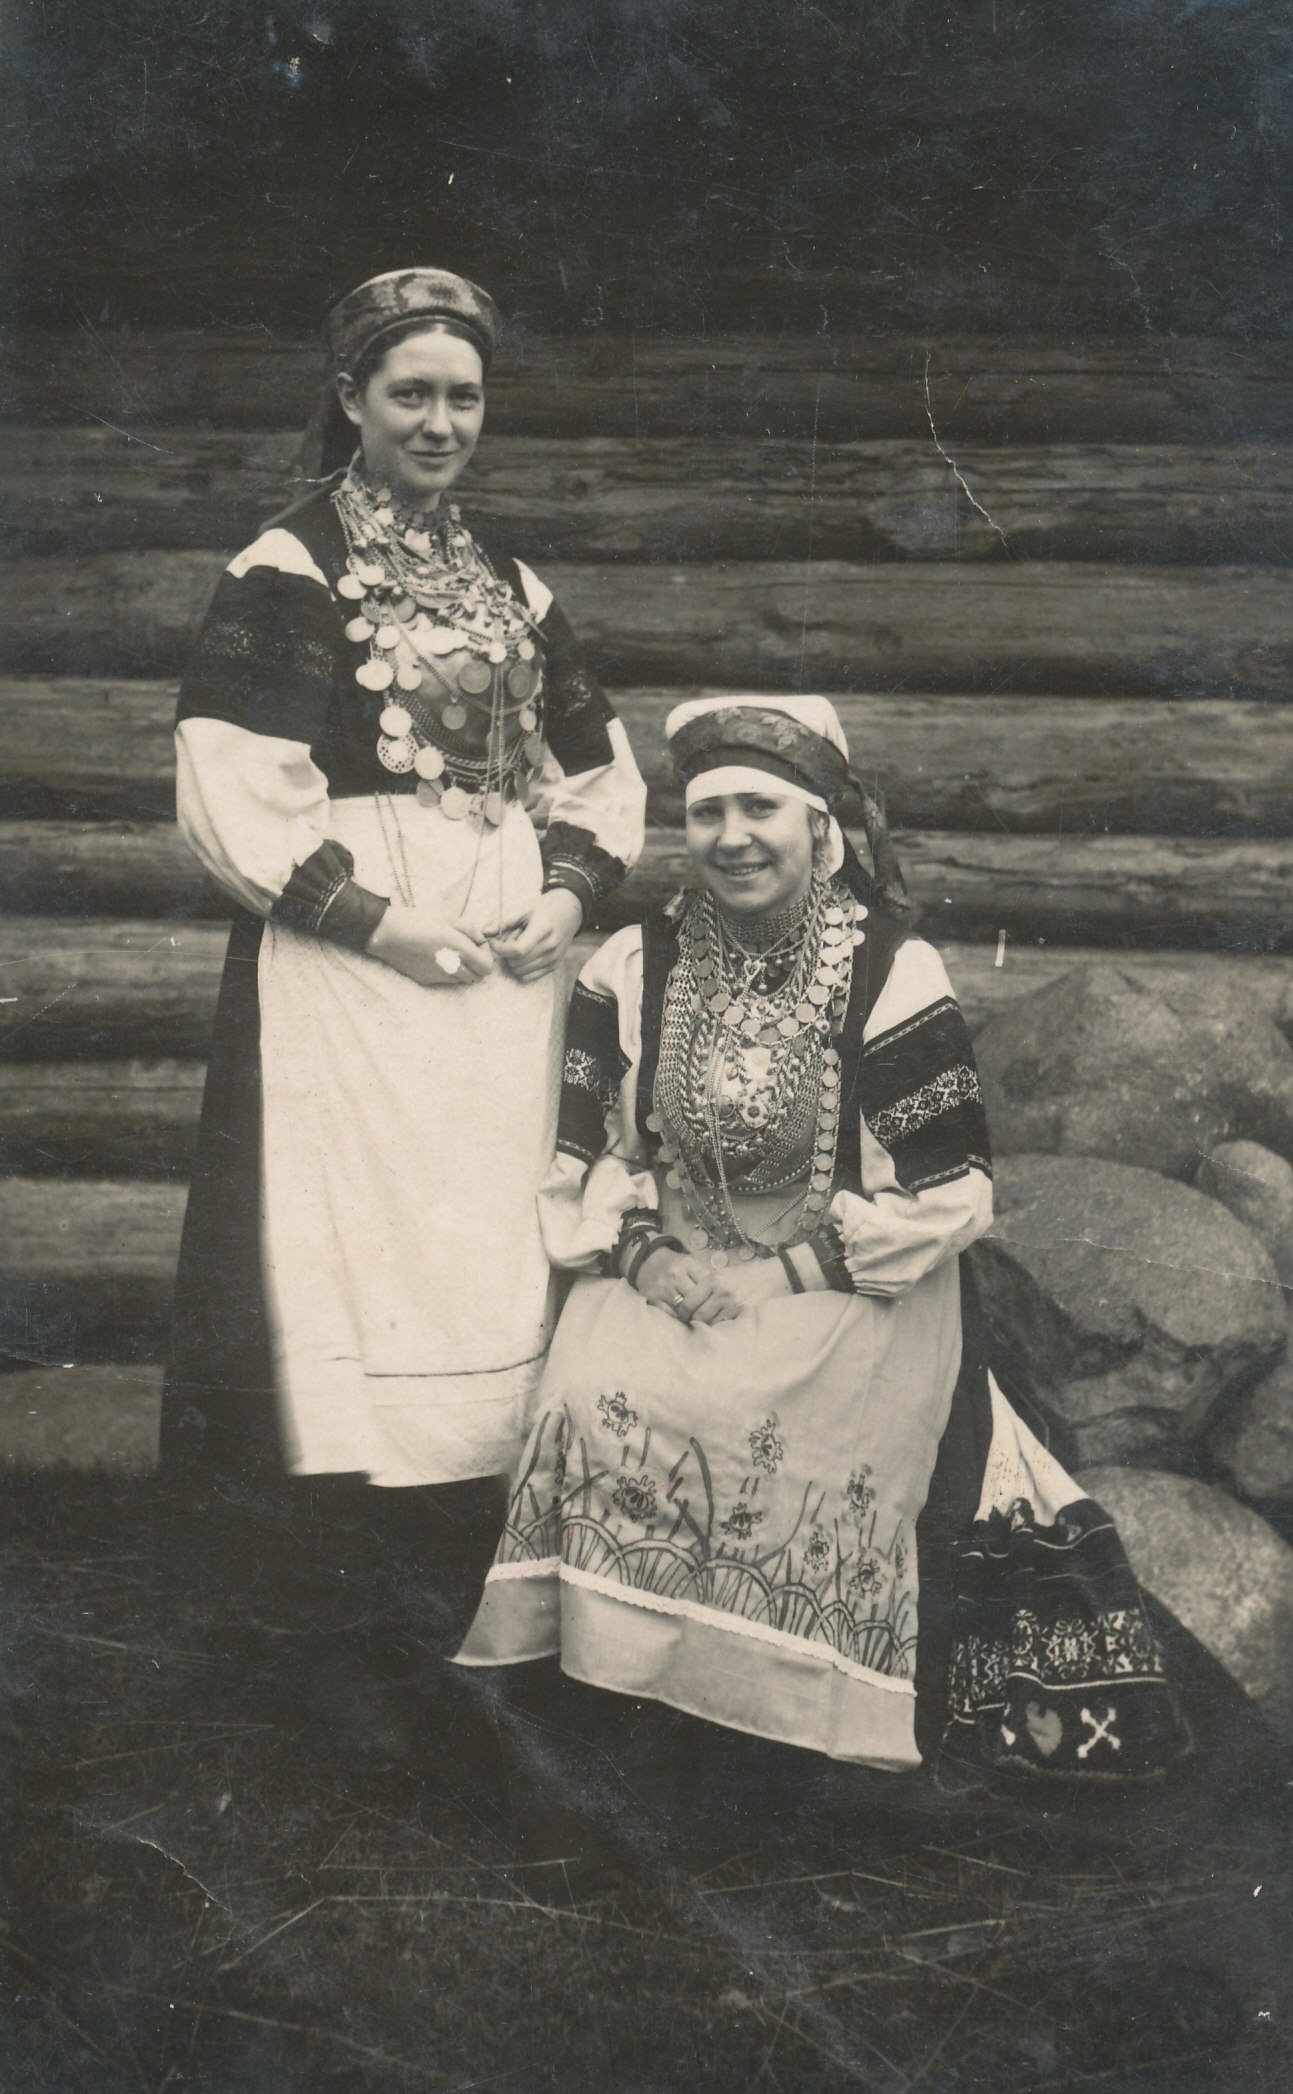 Foto. Setu rahvarõivais naised 1929. a. sügisel Petseris. Seisab Renate Põlendik.